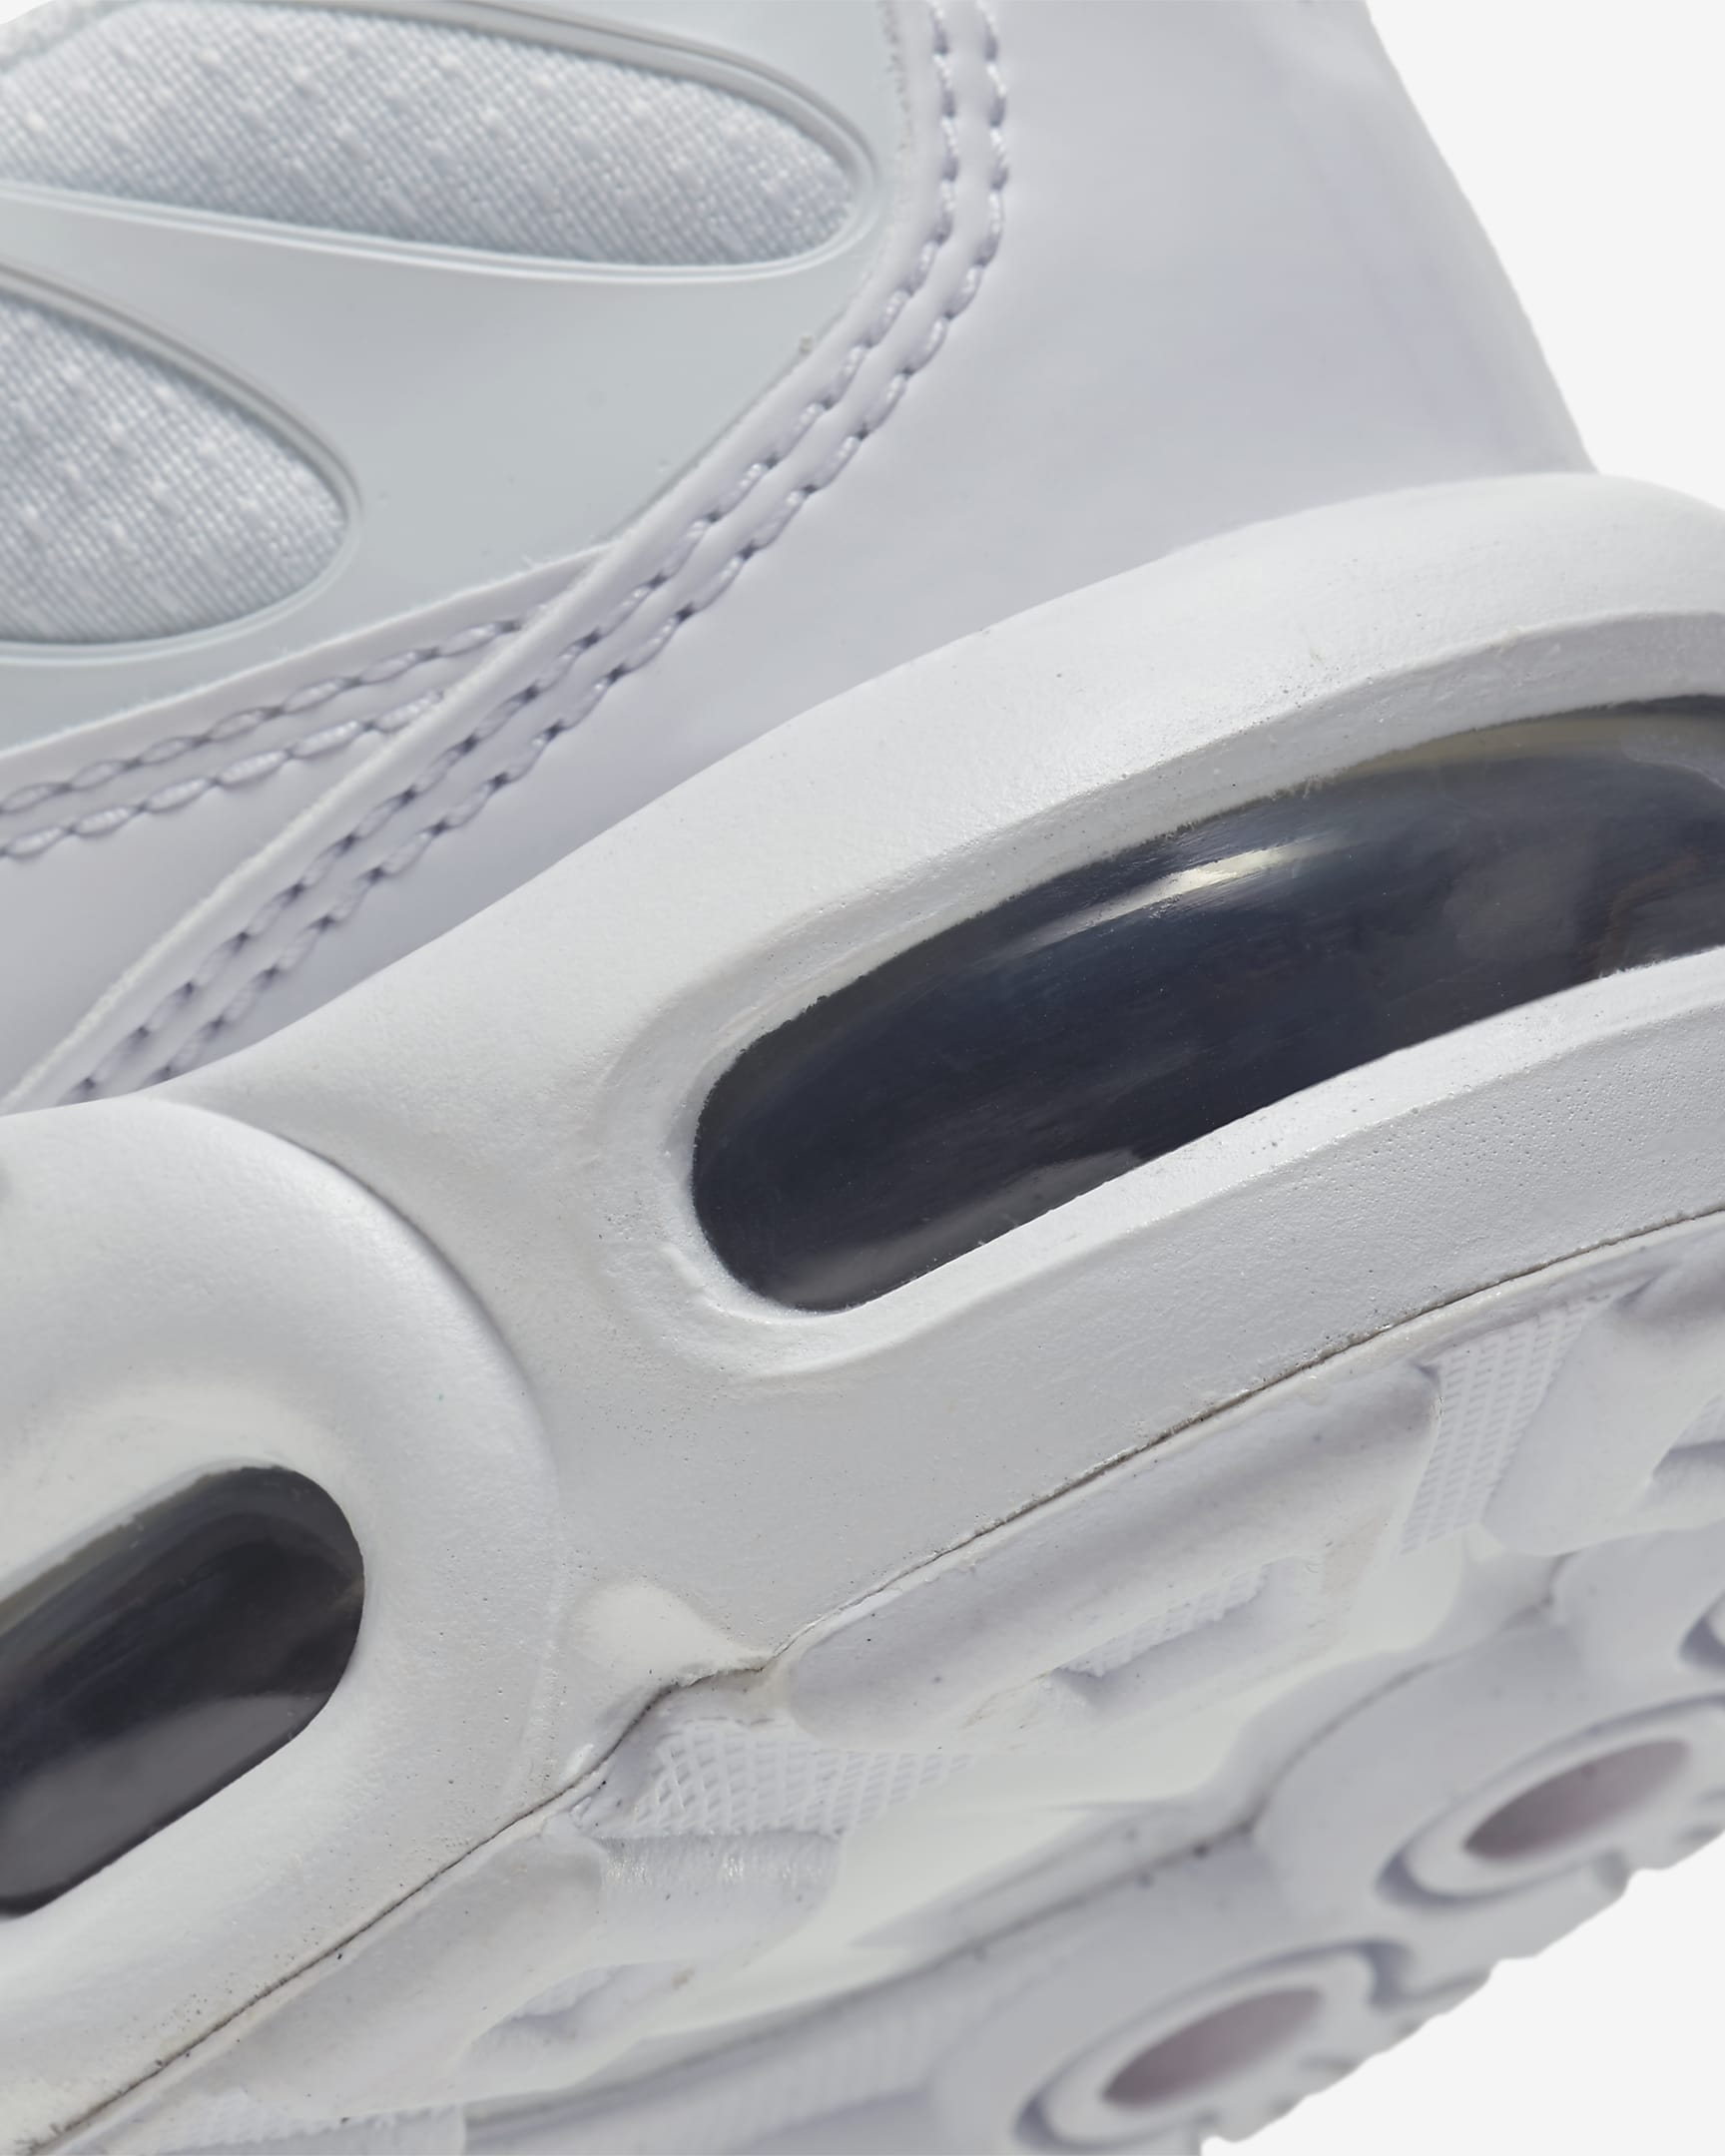 Nike Air Max Plus Schuh für ältere Kinder - Weiß/Metallic Silver/Weiß